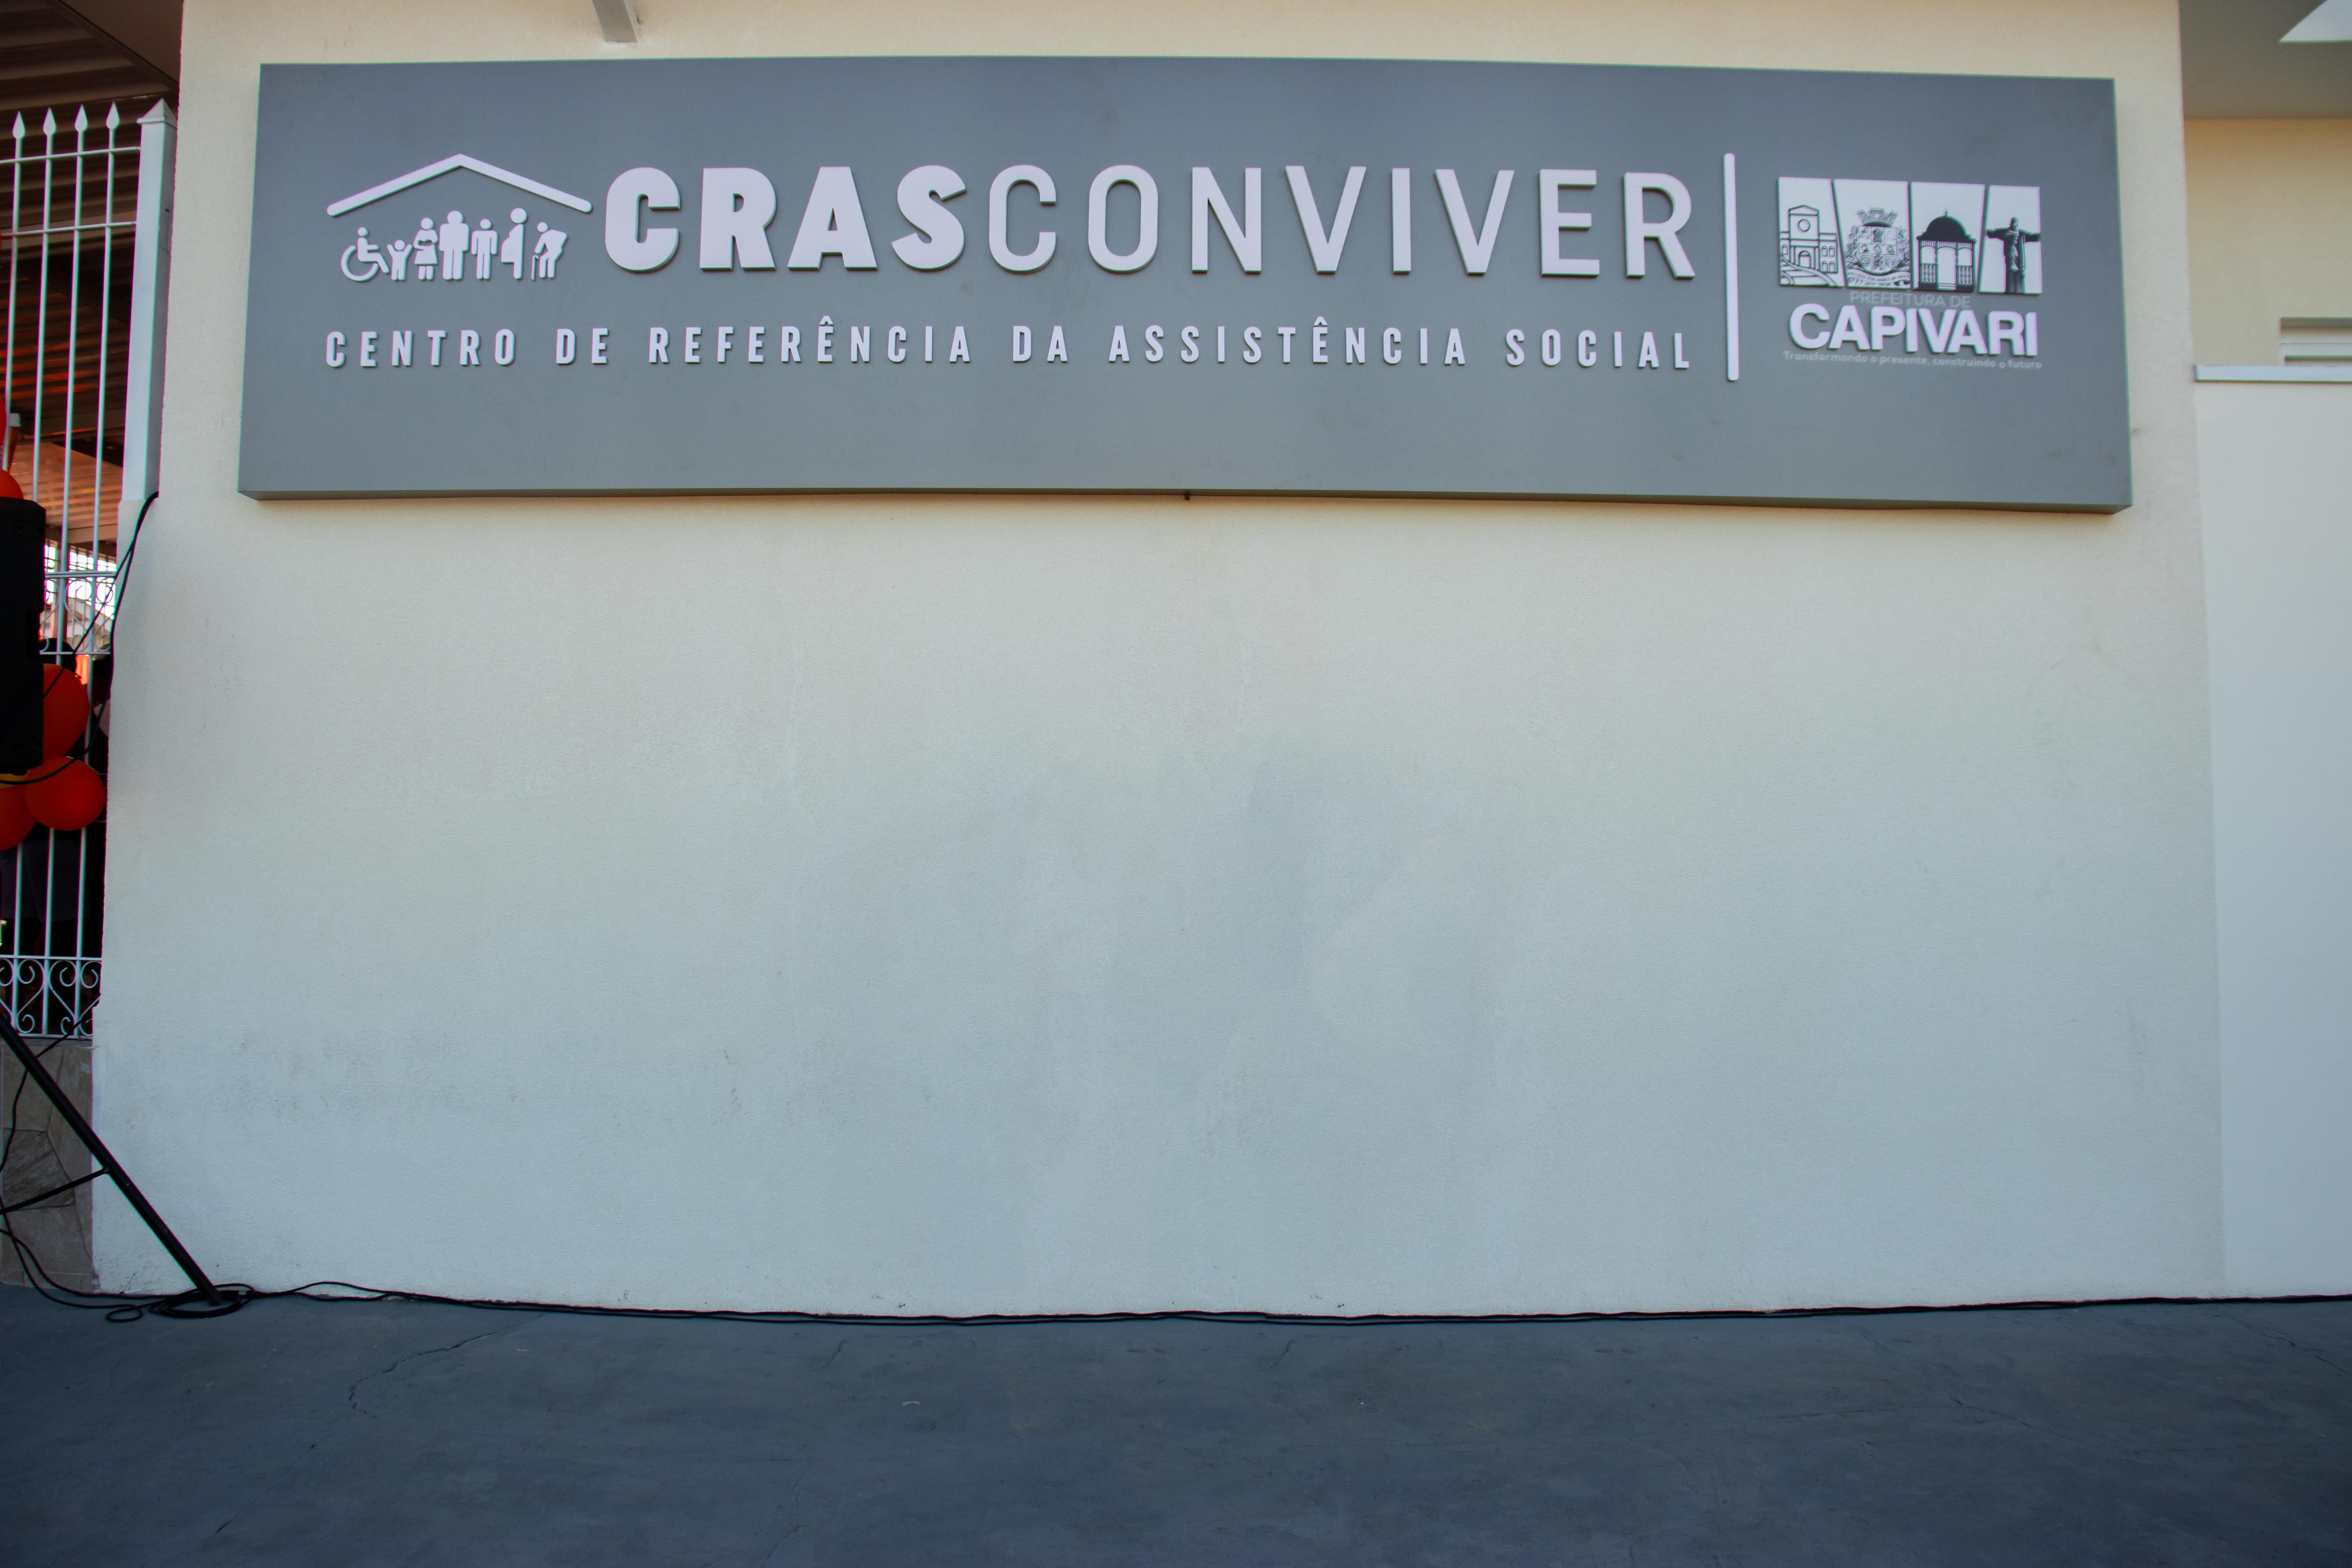 Prefeito Vitão Riccomini e vice Bruno Barnabé inauguram novo espaço de atendimento do Cras Conviver no bairro Rossi